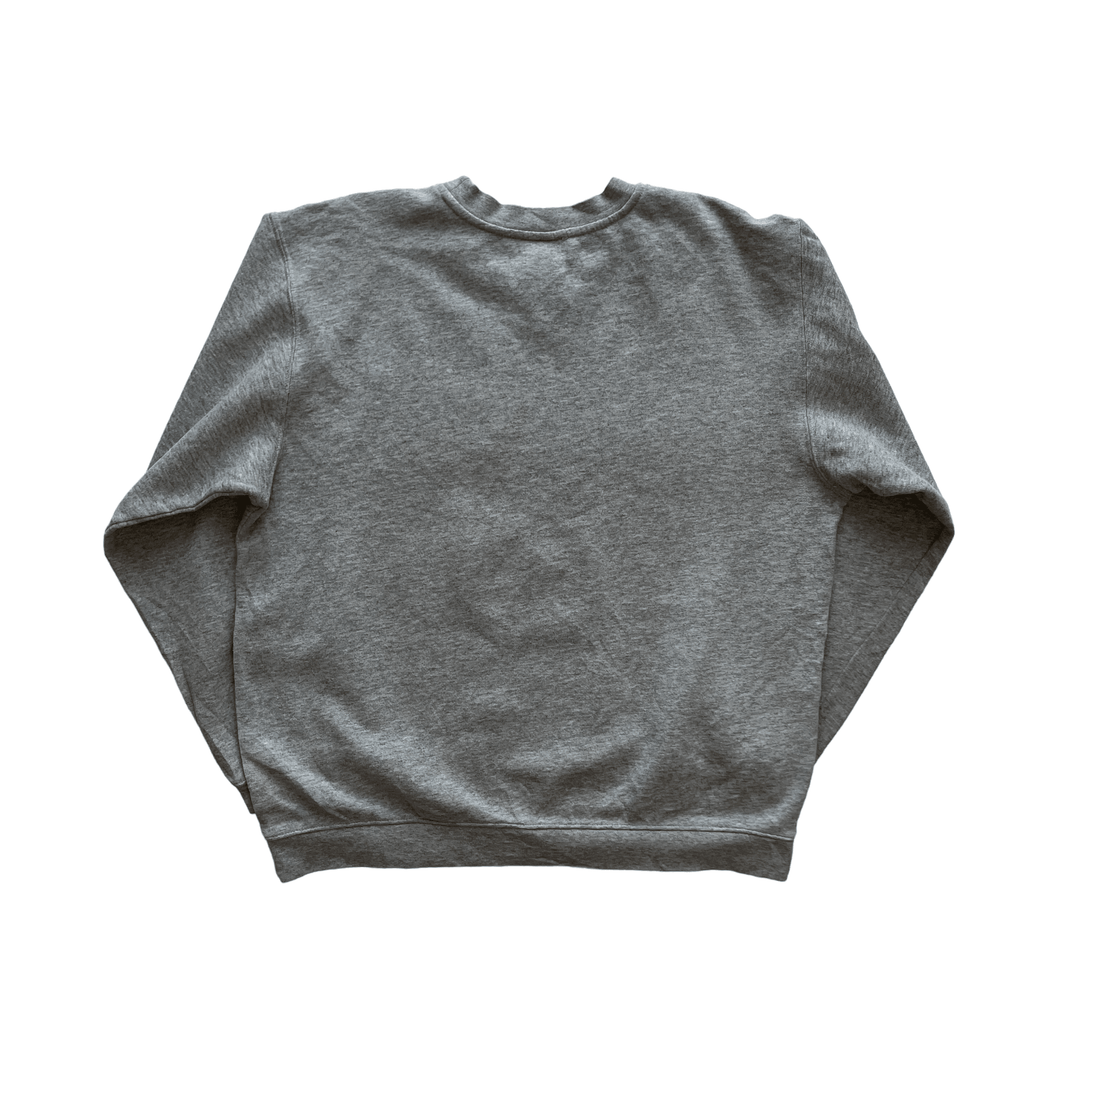 Vintage 90s Grey Nike Mets Sweatshirt - Small - The Streetwear Studio